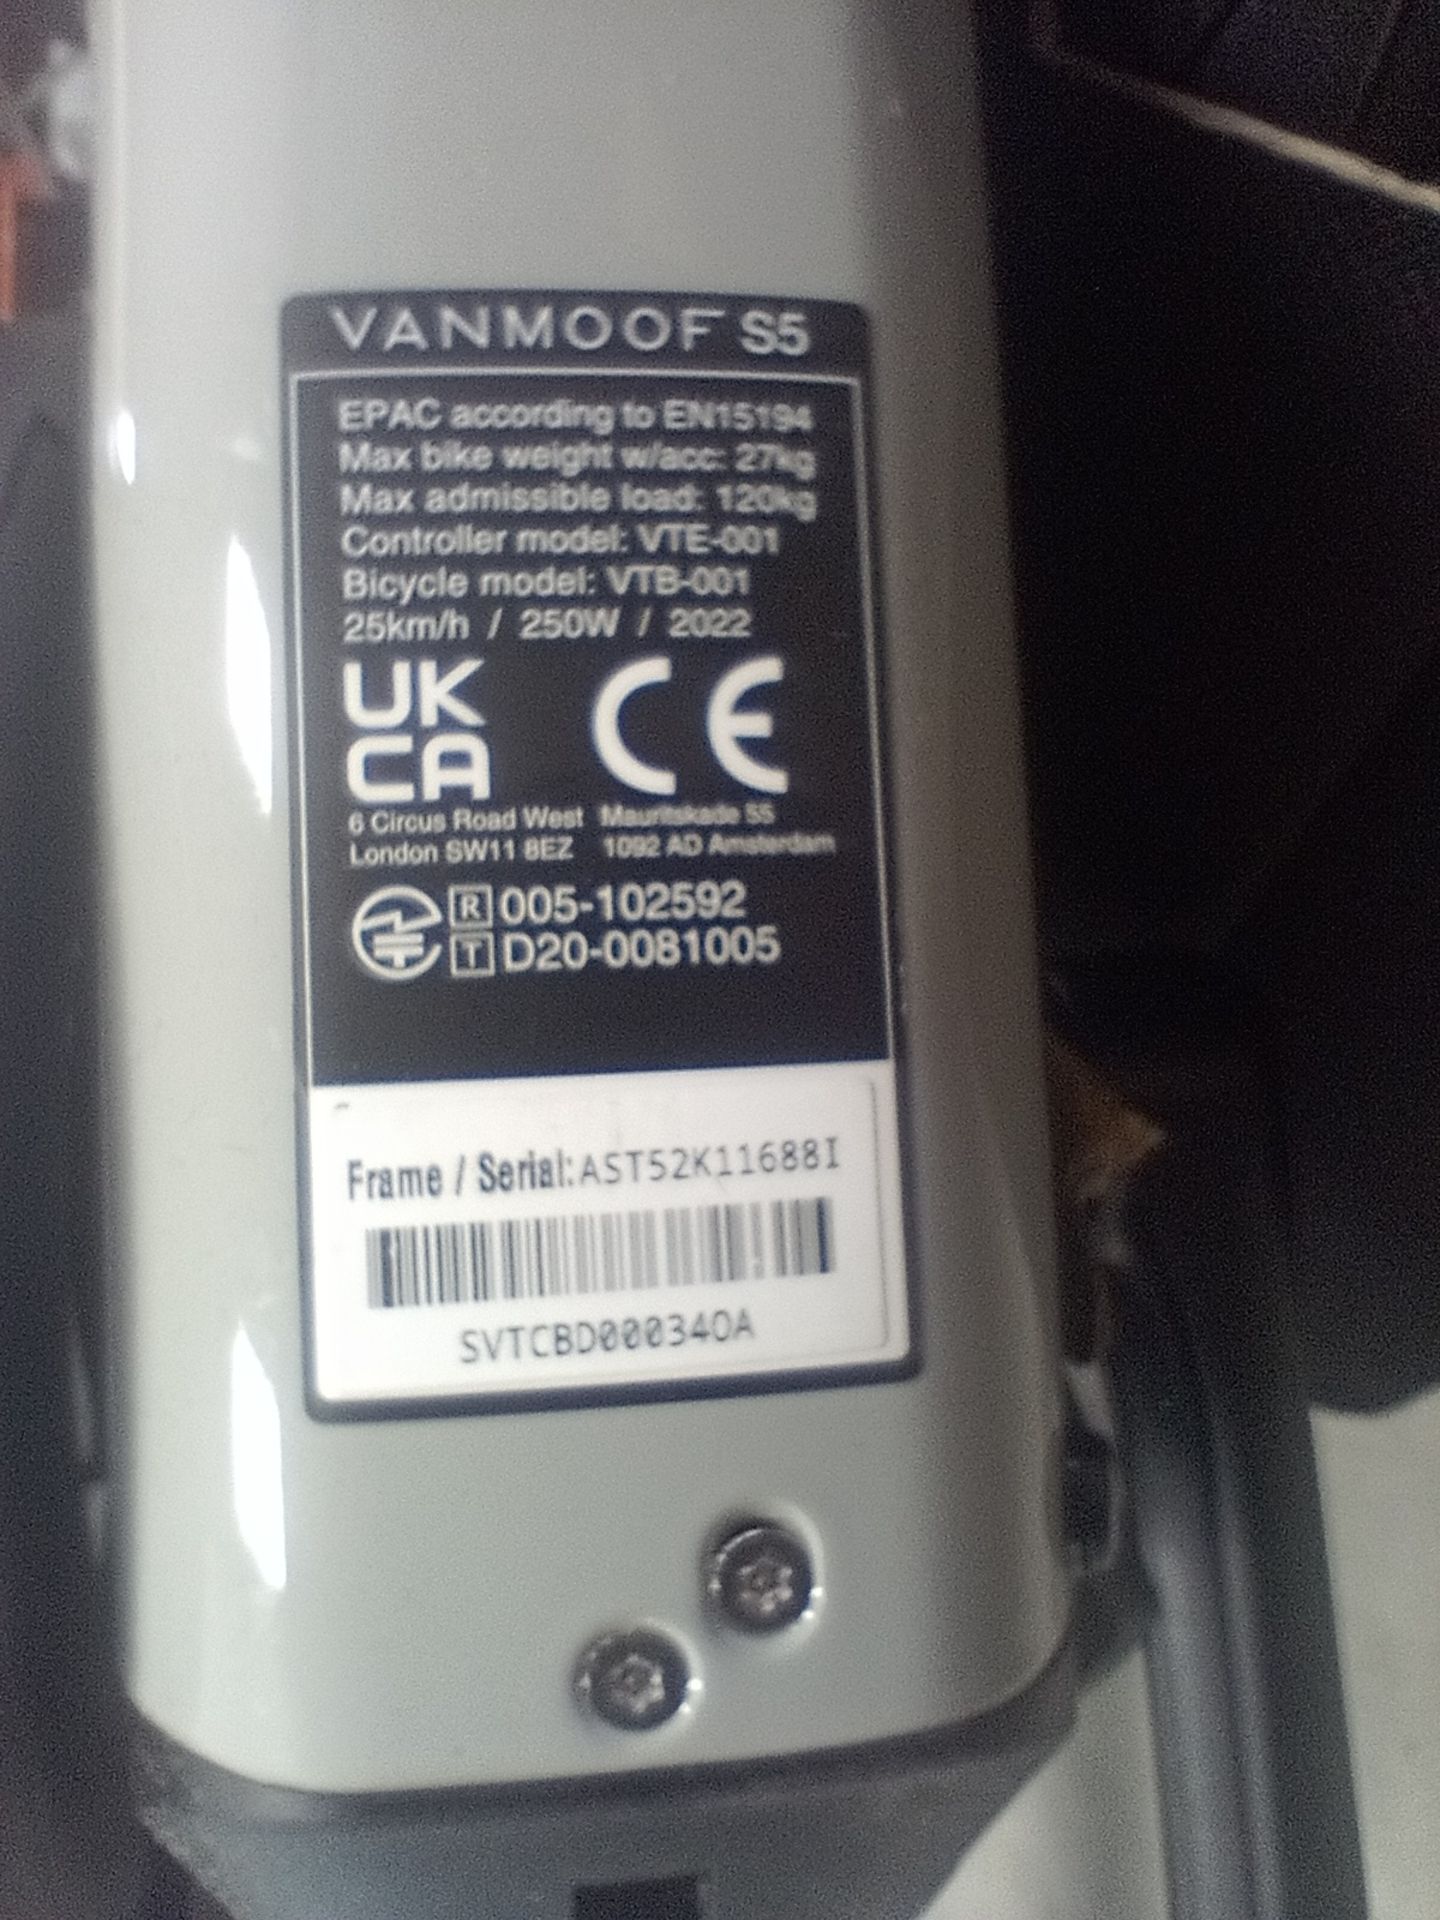 VanMoof S5 Electric Bike, Frame Number AST52K11688I, Serial Number SVTCBD00034OA (NOT ROADWORTHY - - Image 2 of 2